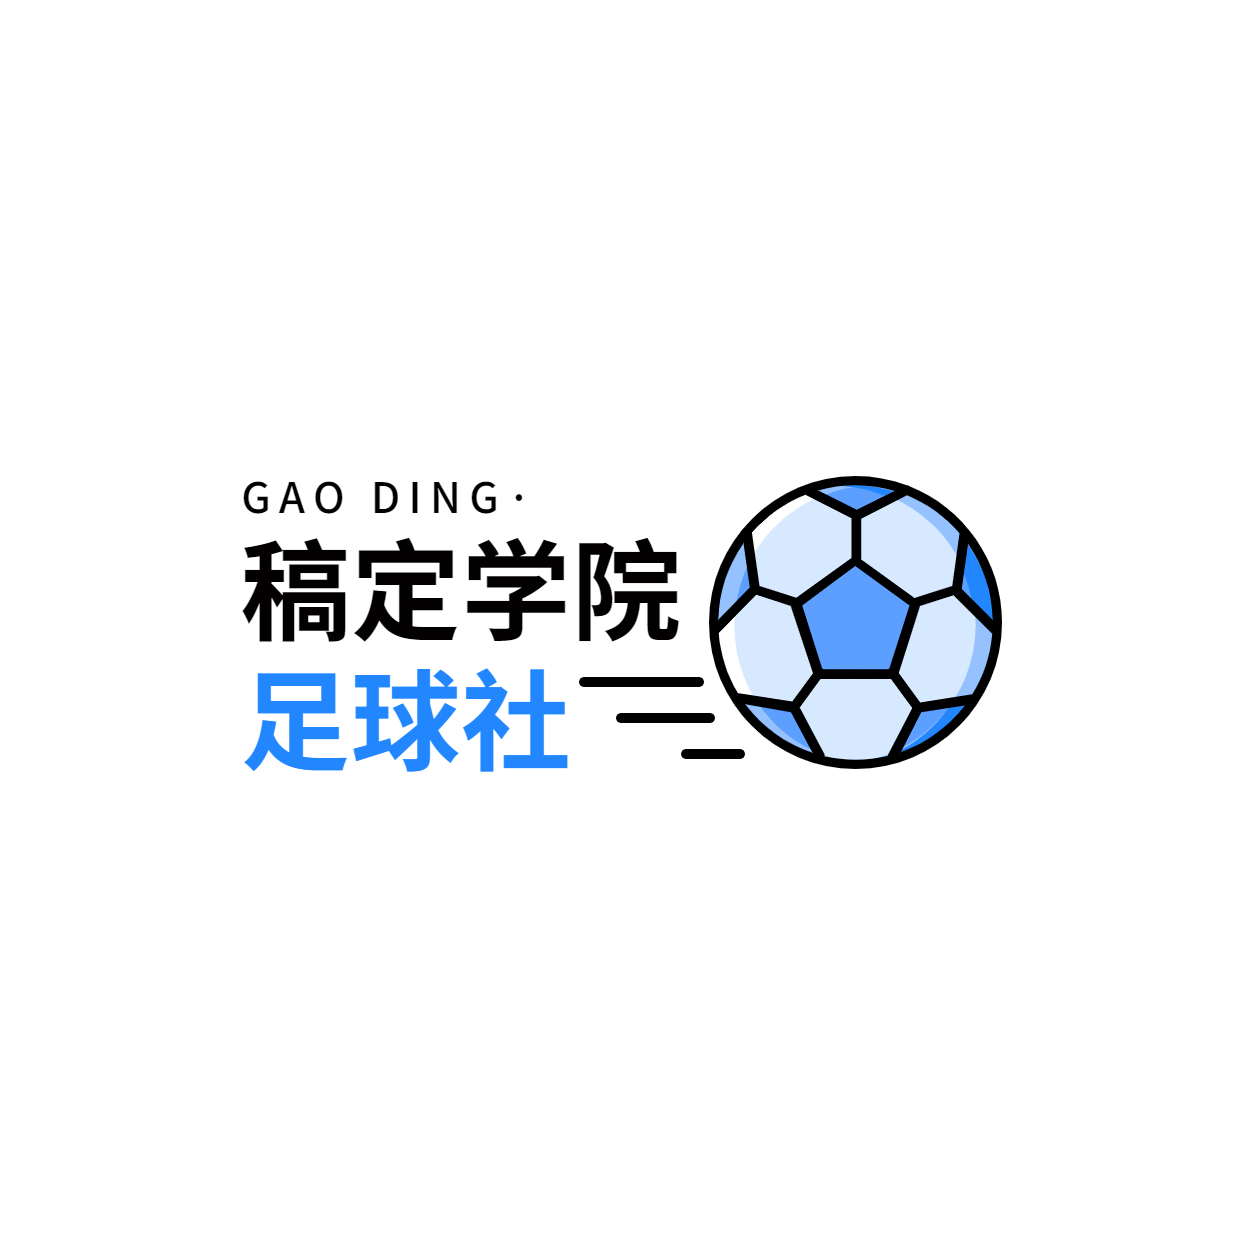 教育培训足球社简约清新logo